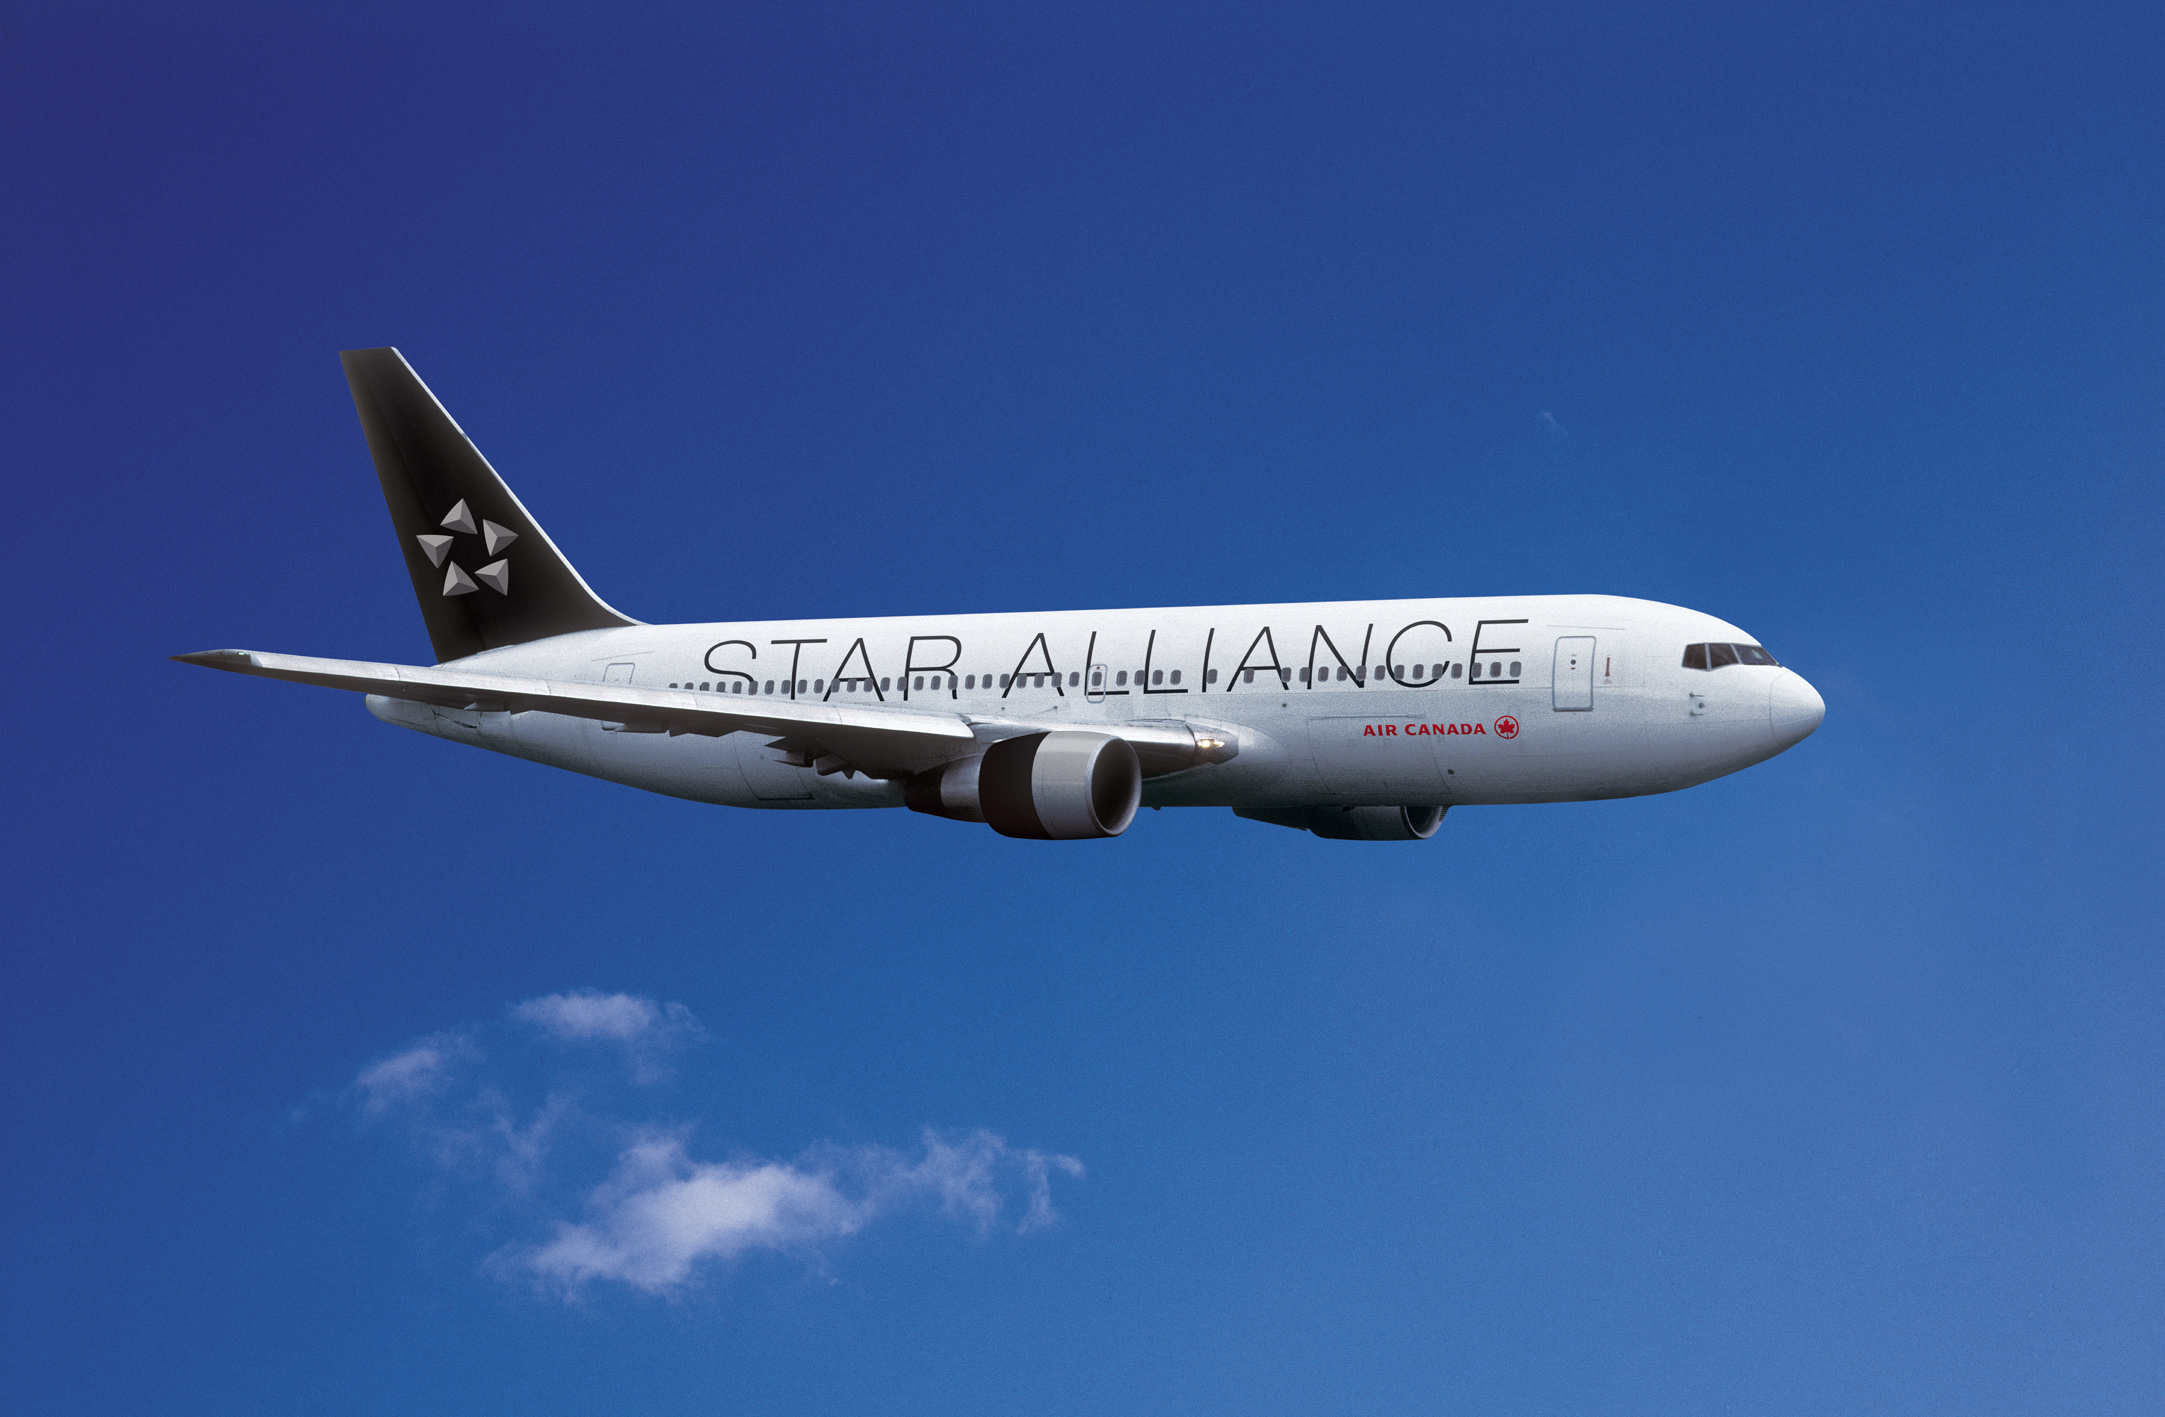 Star Alliance Air Canada airplane